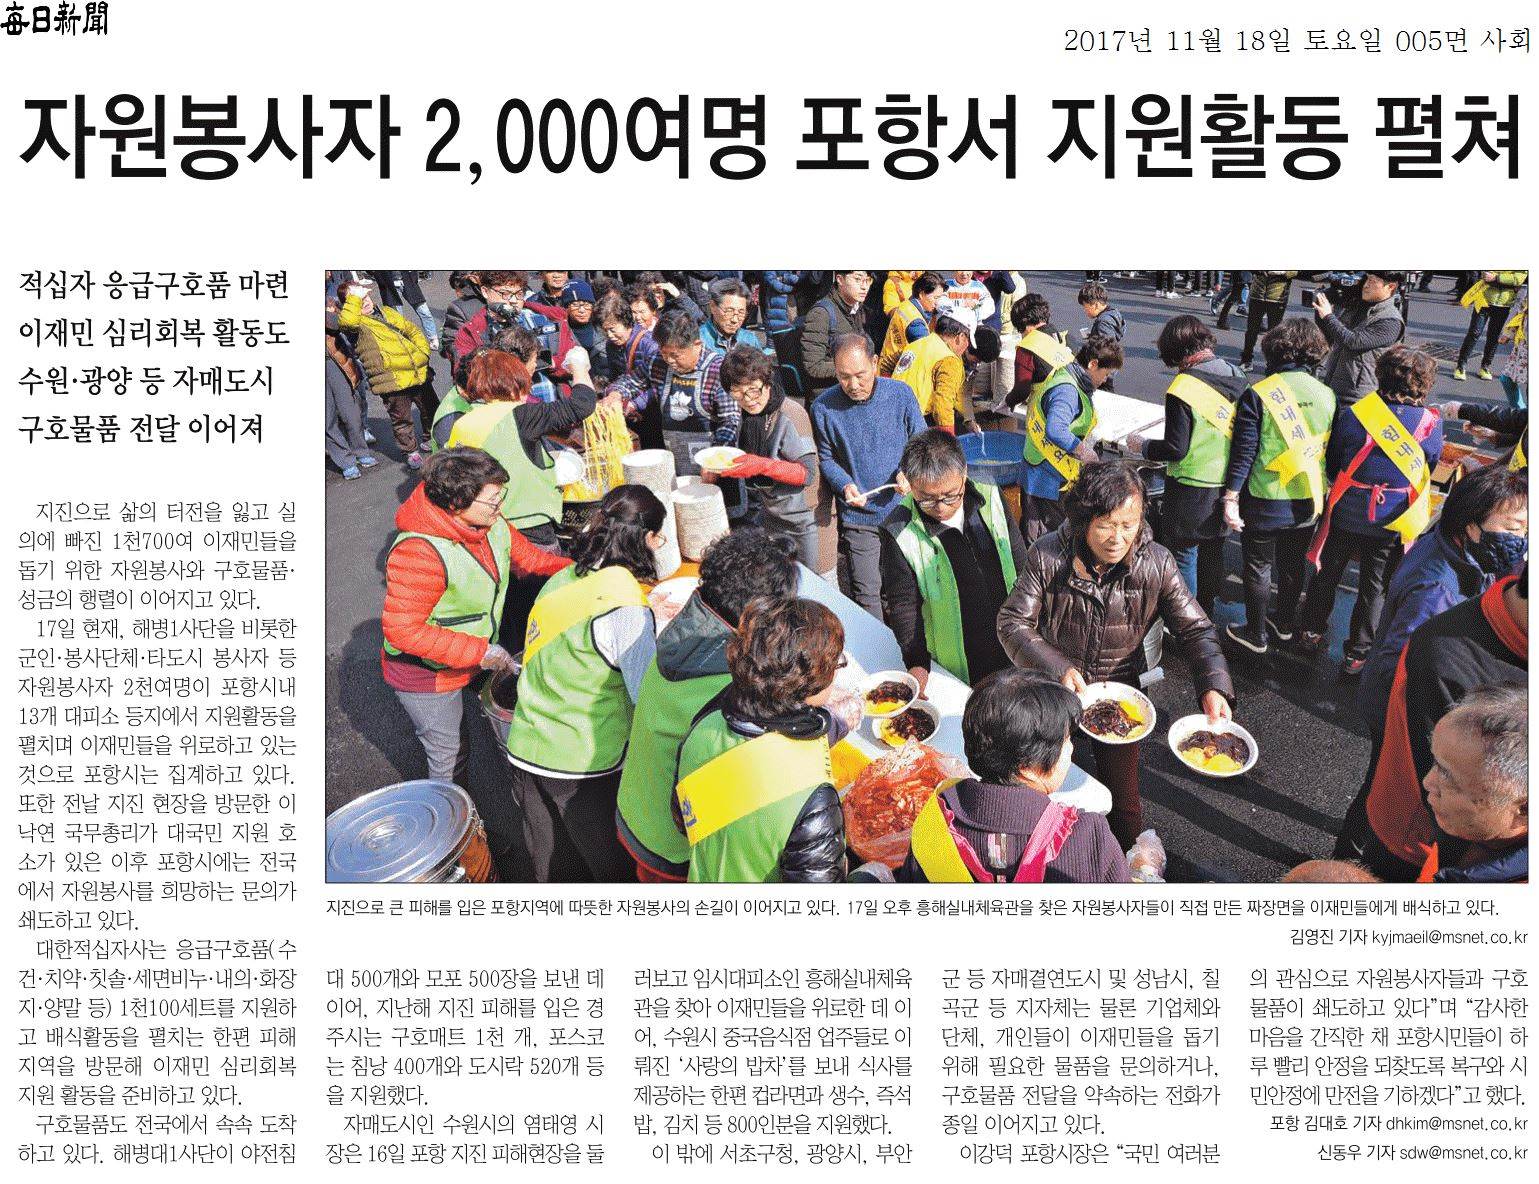 자원봉사자 2,000여명 포항서 지원활동 펼쳐